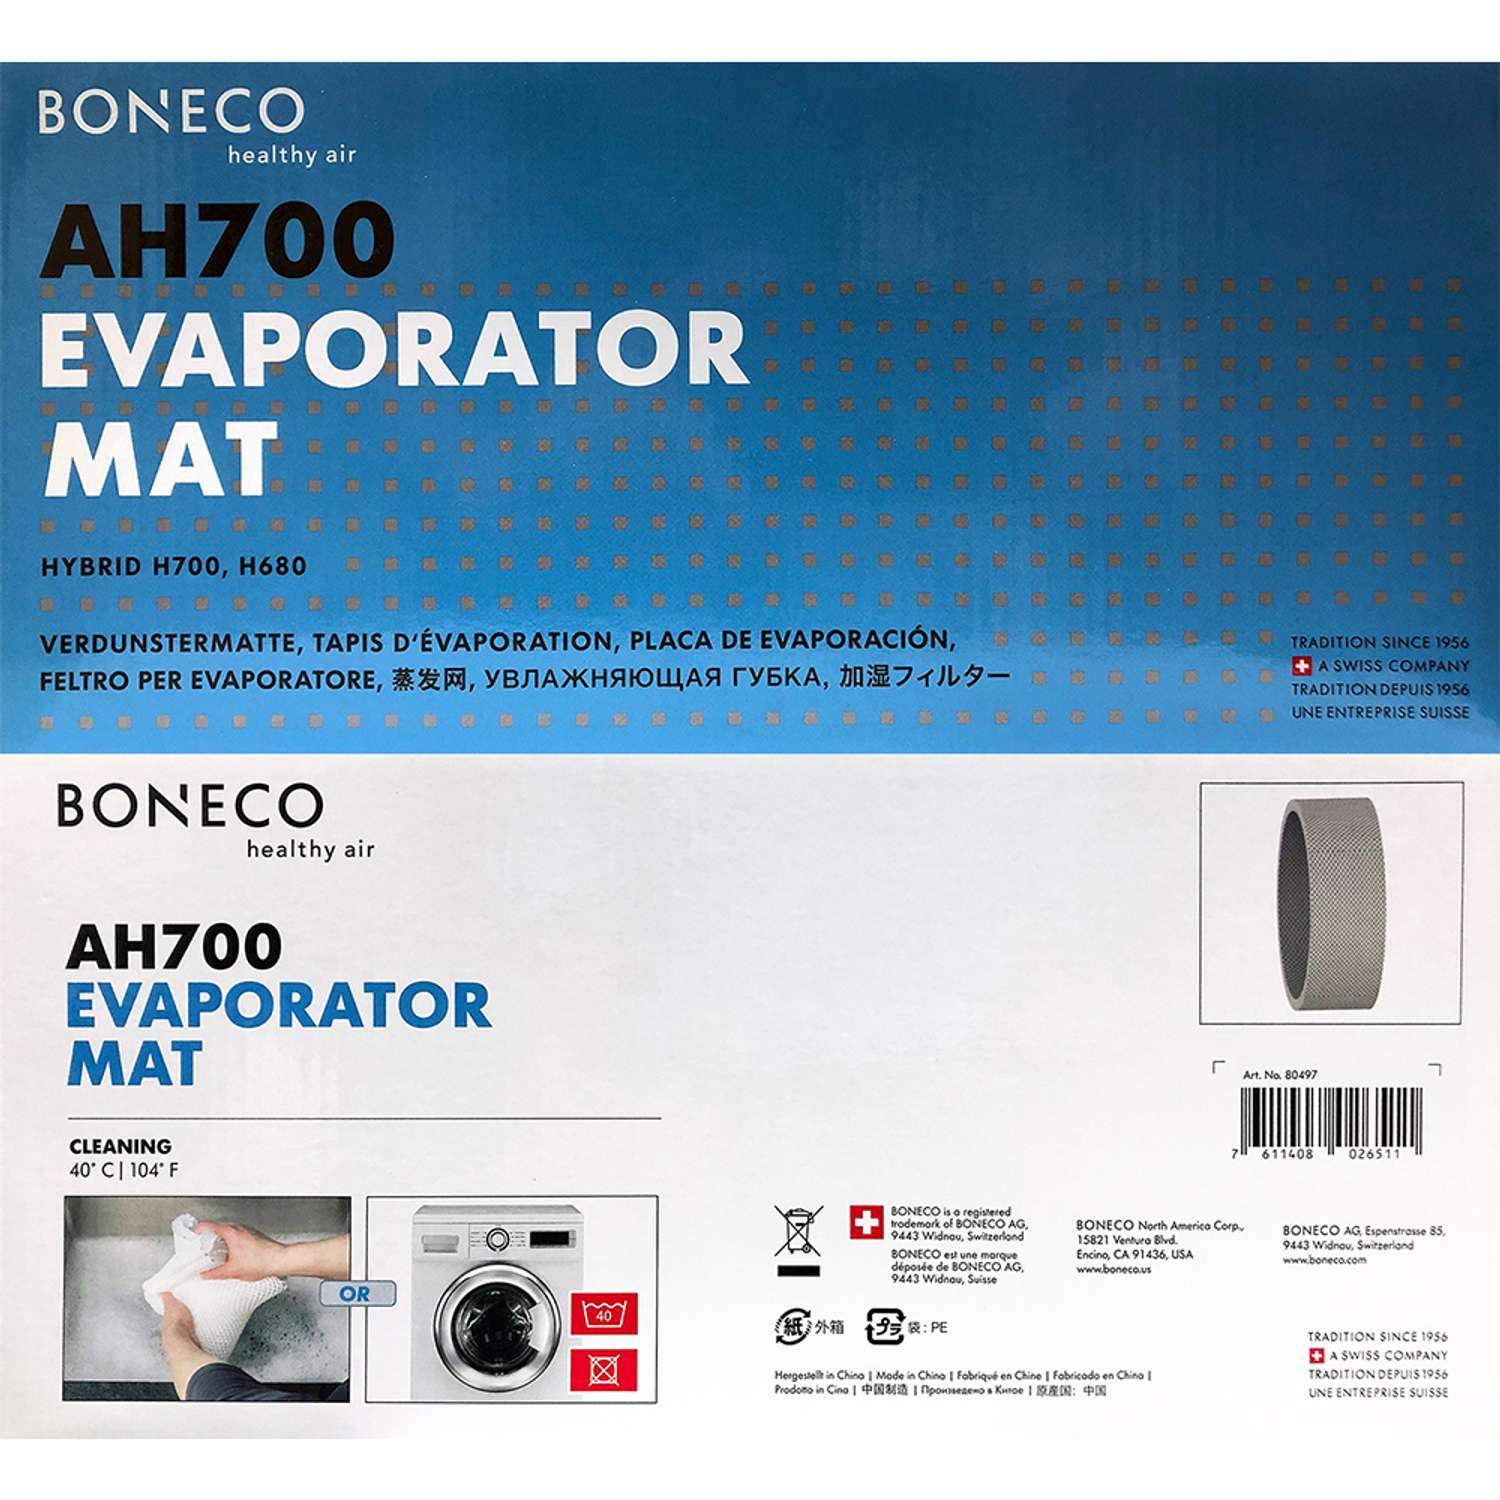 Губка увлажняющая Boneco 3D AH700 для климатических комплексов Boneco Н700-Н680 - фото 2